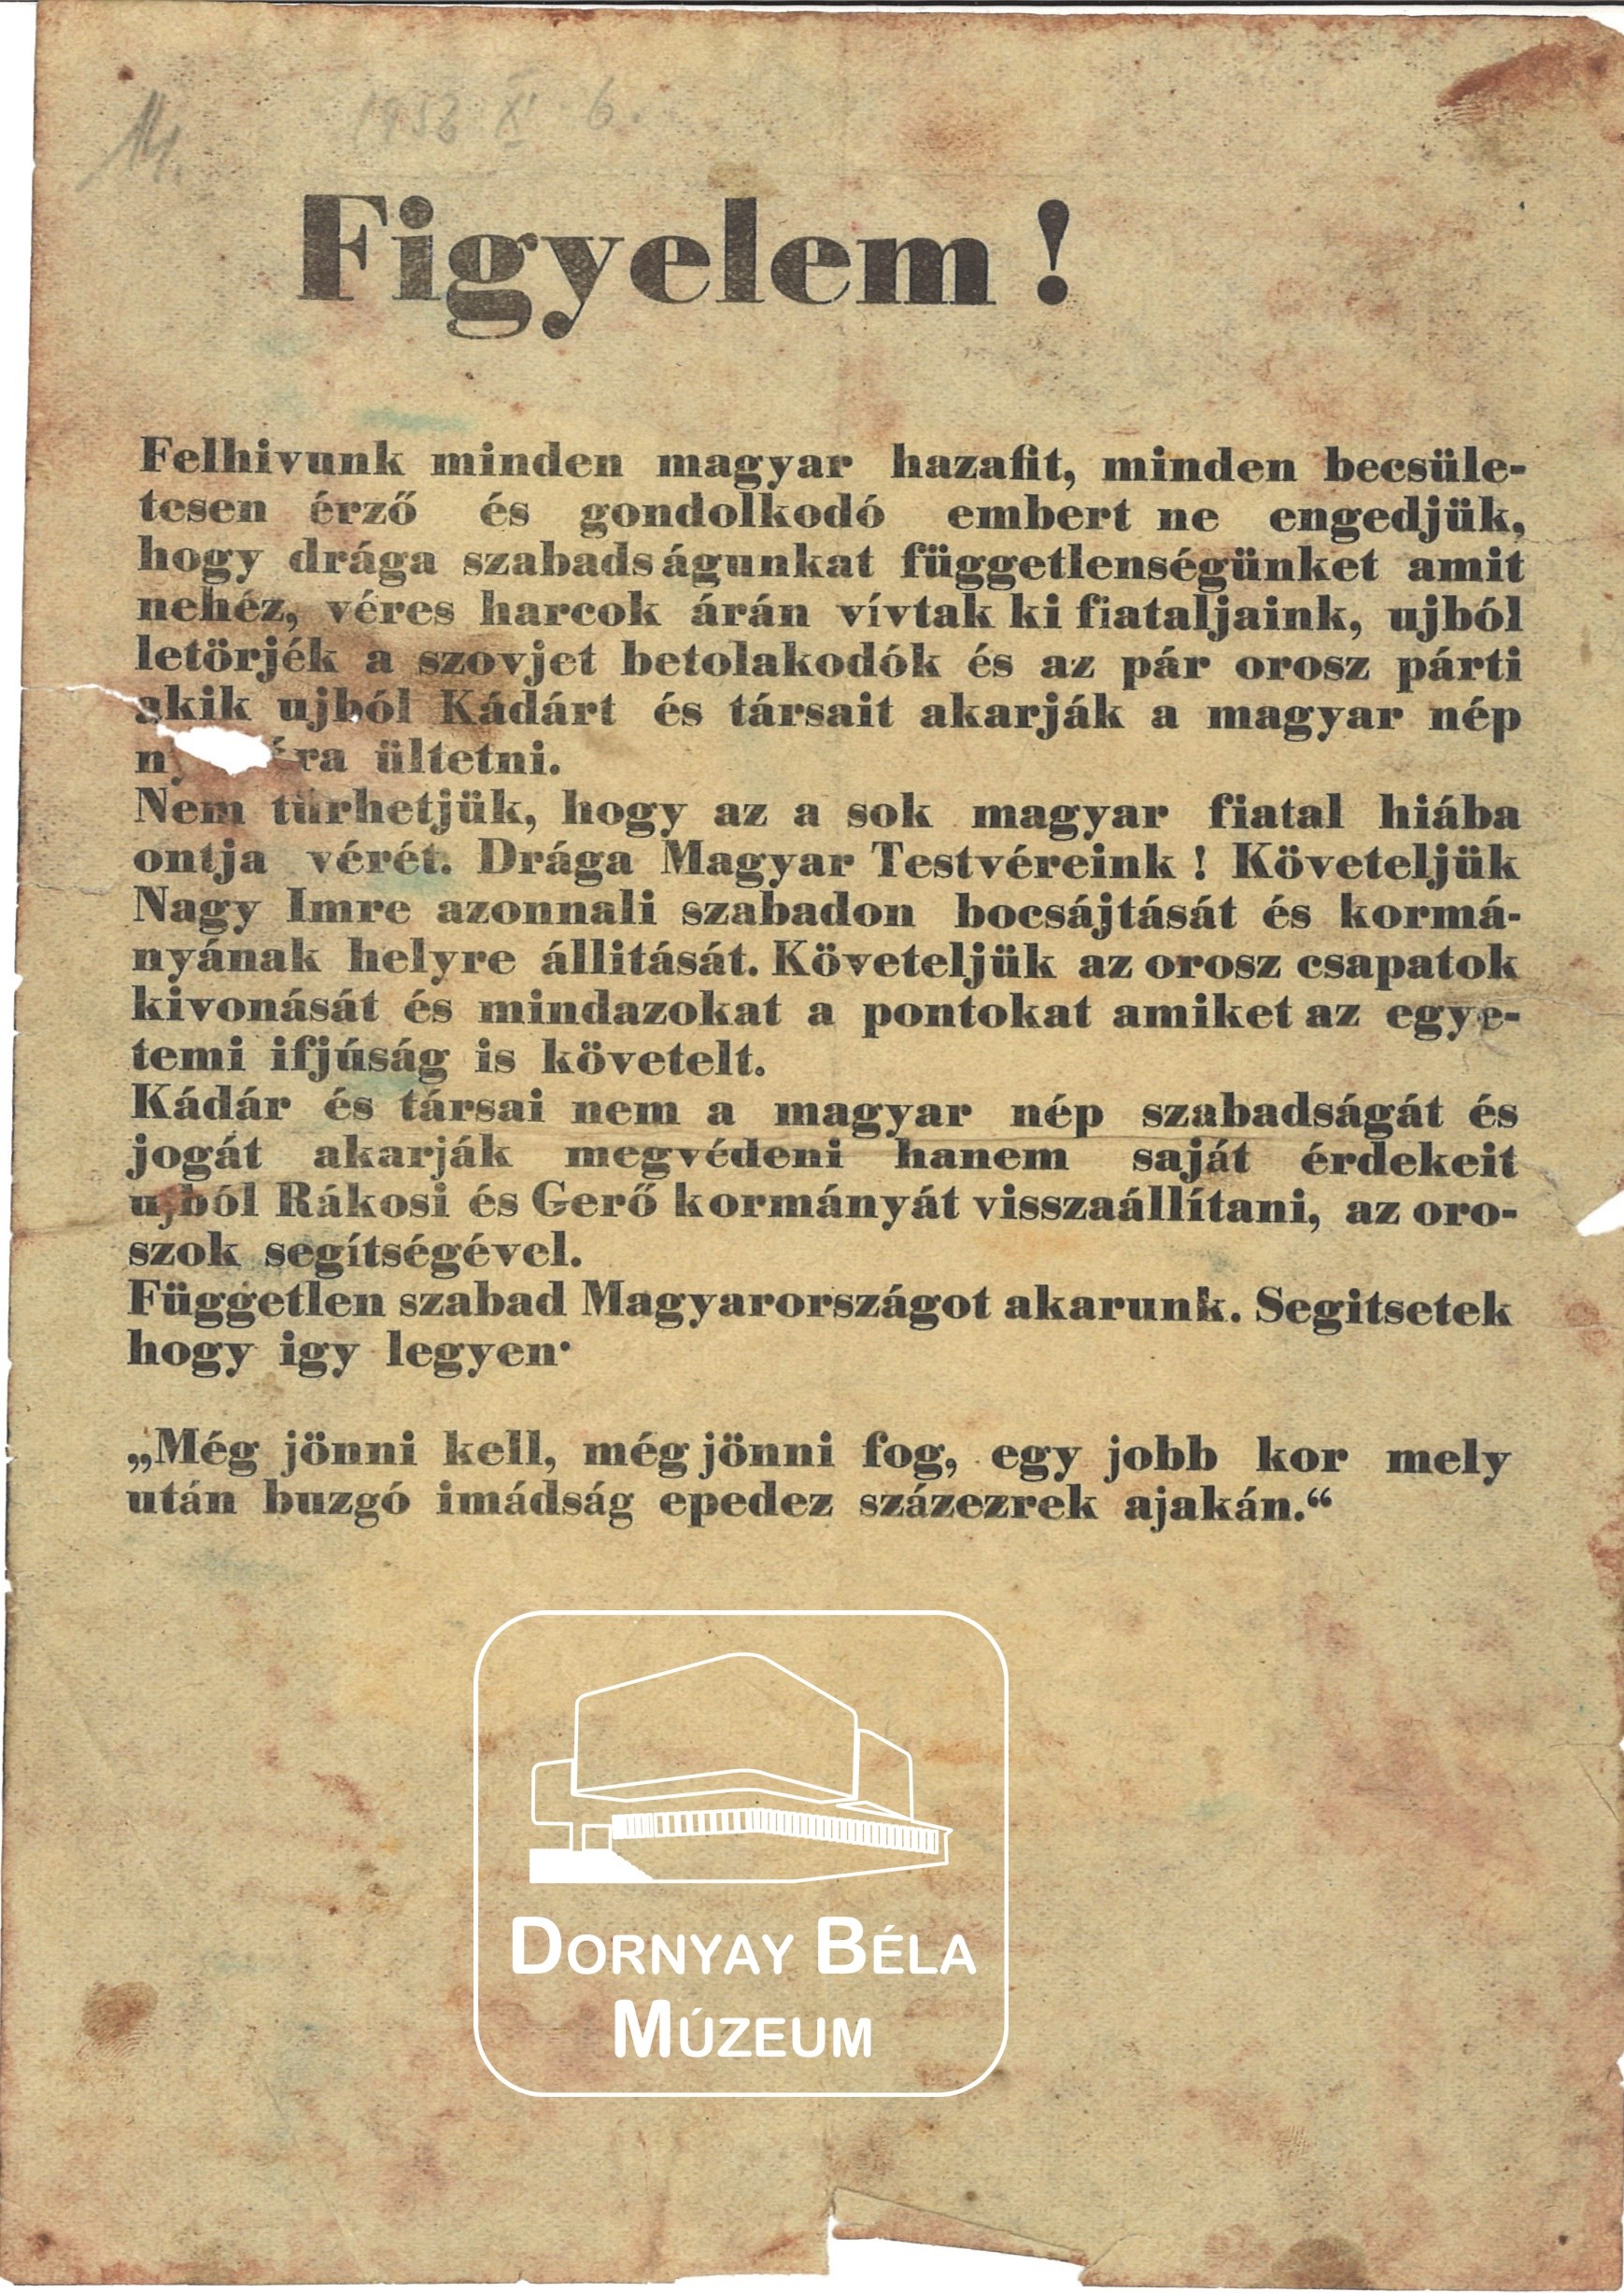 Ellenforradalmi röplap (Dornyay Béla Múzeum, Salgótarján CC BY-NC-SA)